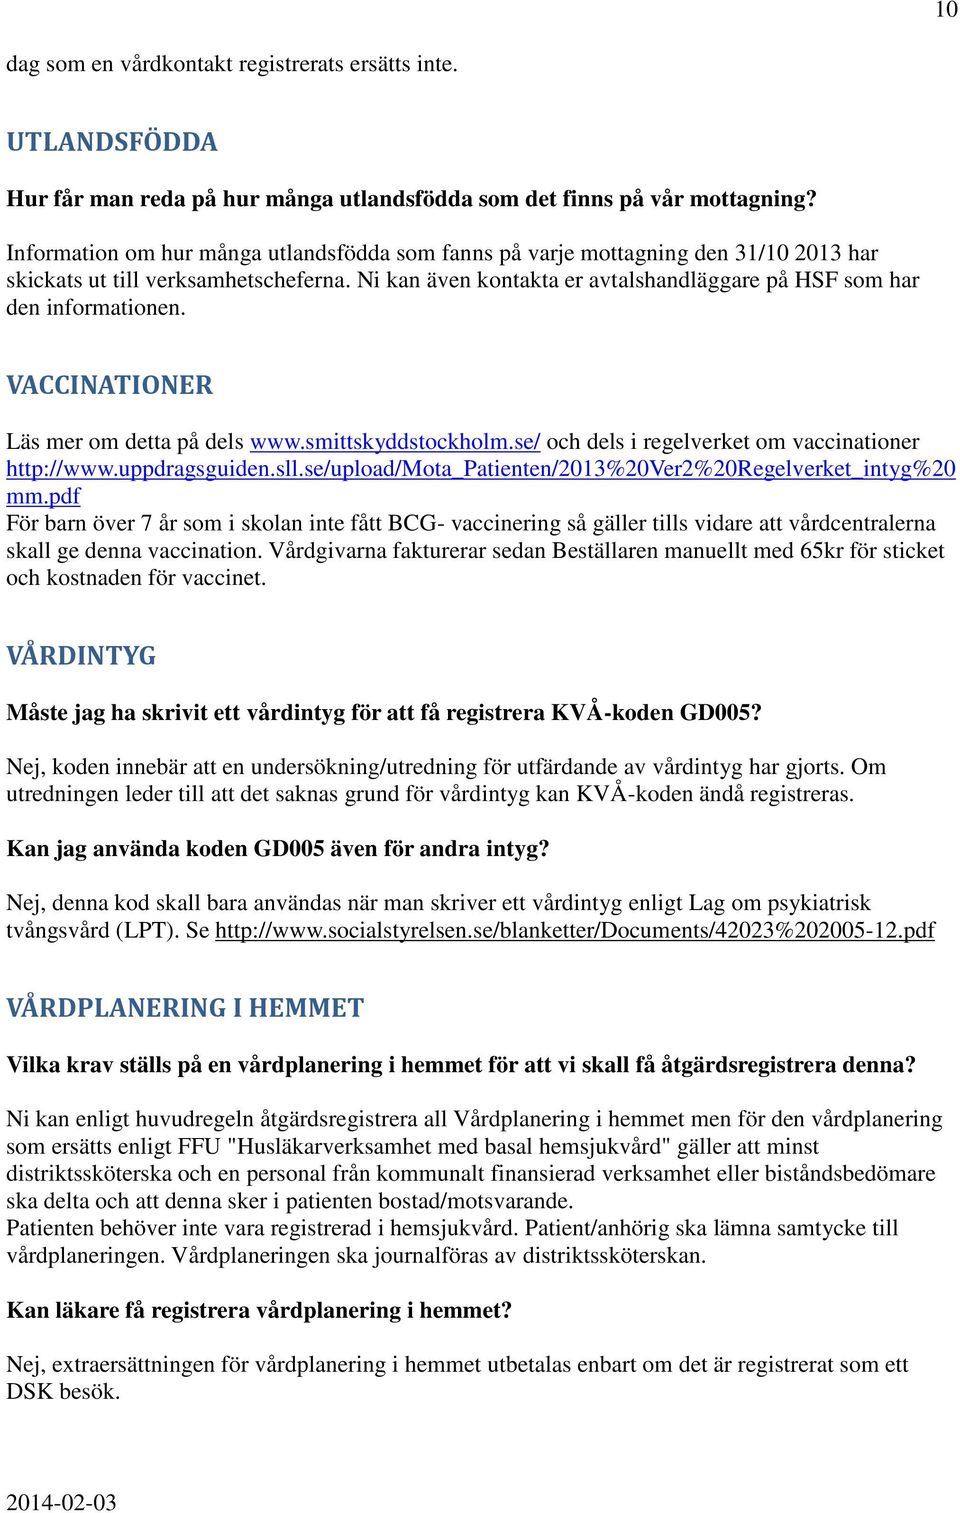 VACCINATIONER Läs mer om detta på dels www.smittskyddstockholm.se/ och dels i regelverket om vaccinationer http://www.uppdragsguiden.sll.se/upload/mota_patienten/2013%20ver2%20regelverket_intyg%20 mm.